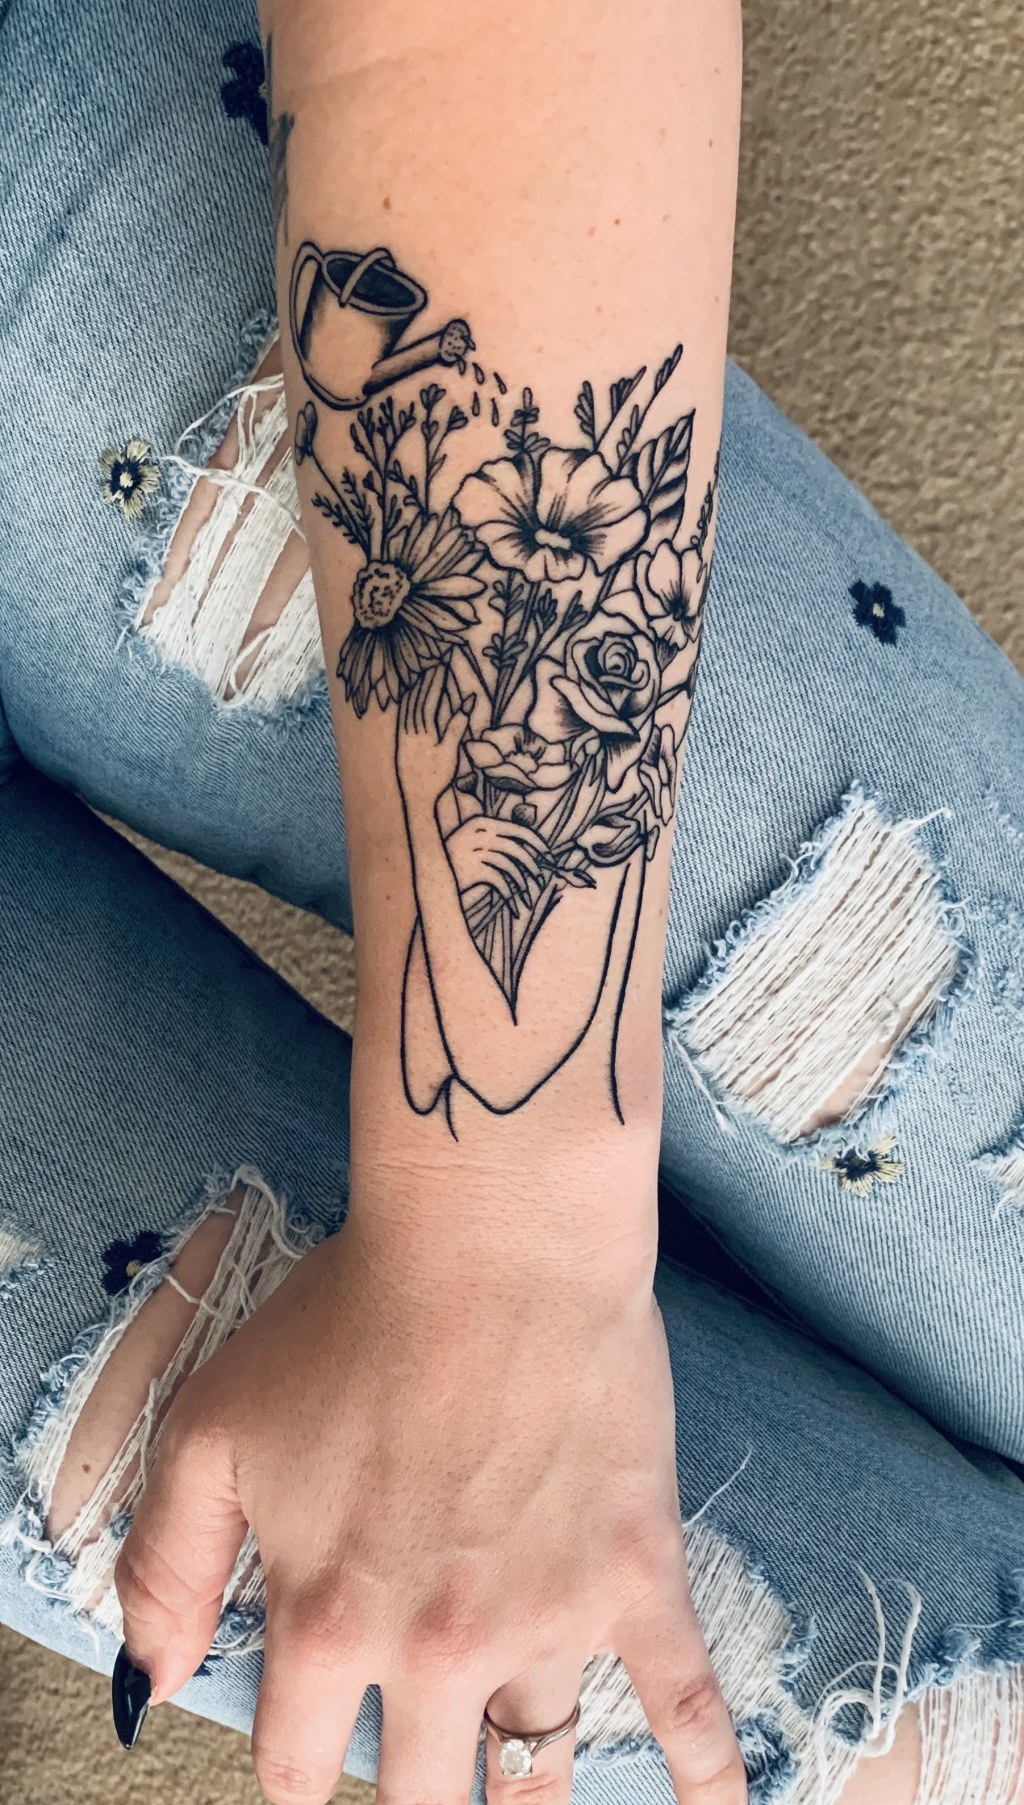 self love flower tattoo - Self love tattoo  Forearm tattoo women, Self love tattoo, Forearm